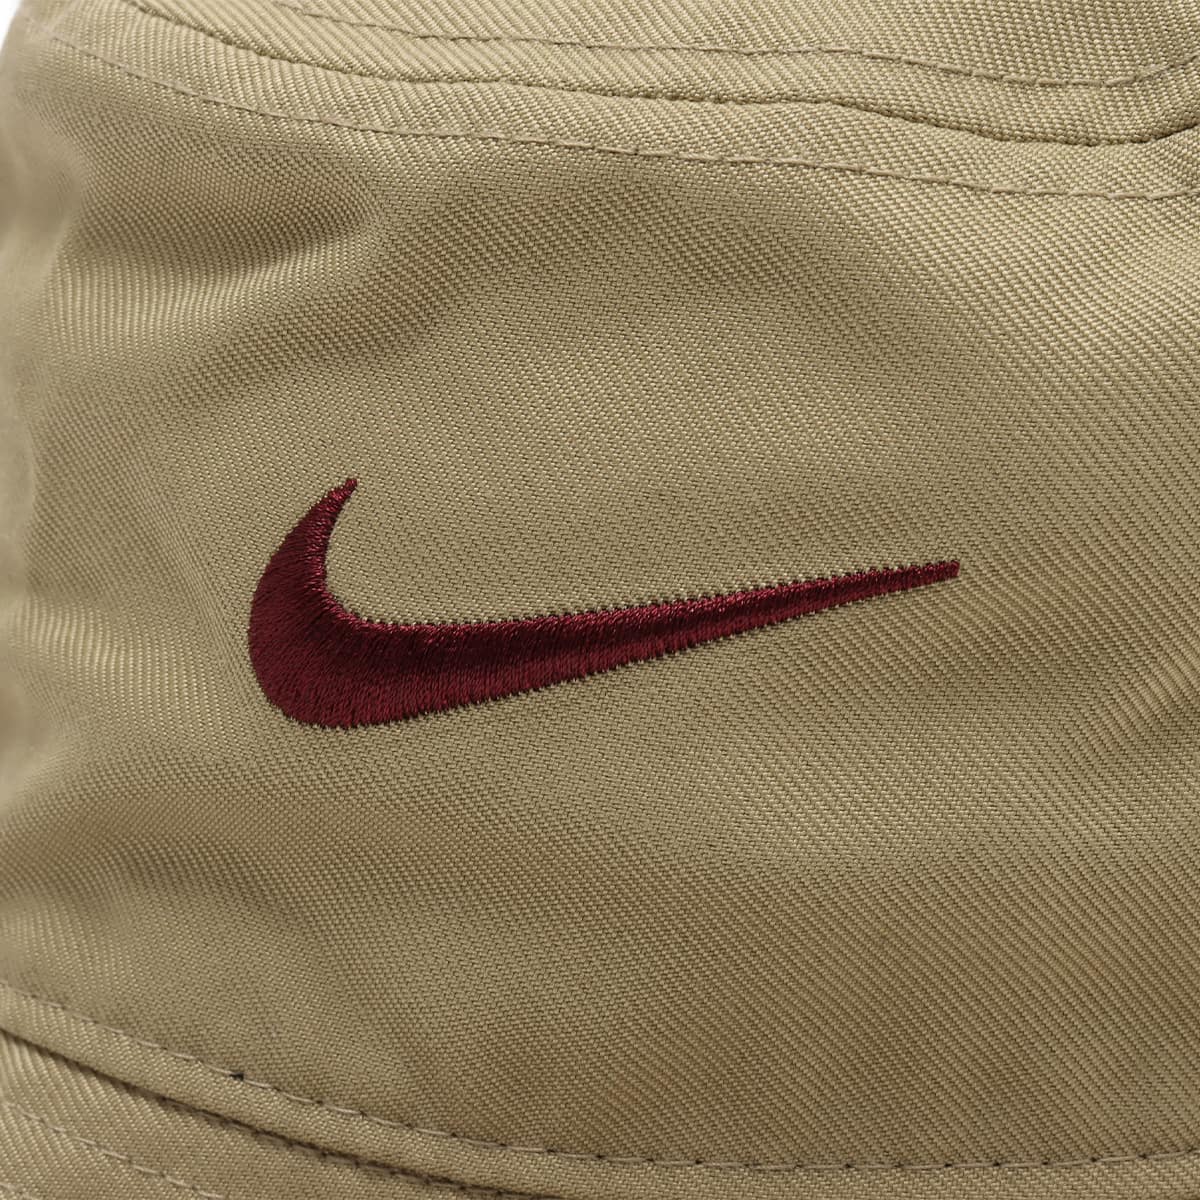 Nike Apex Swoosh Bucket Hat 'Neutral Olive/Night Maroon' - FB5382-276